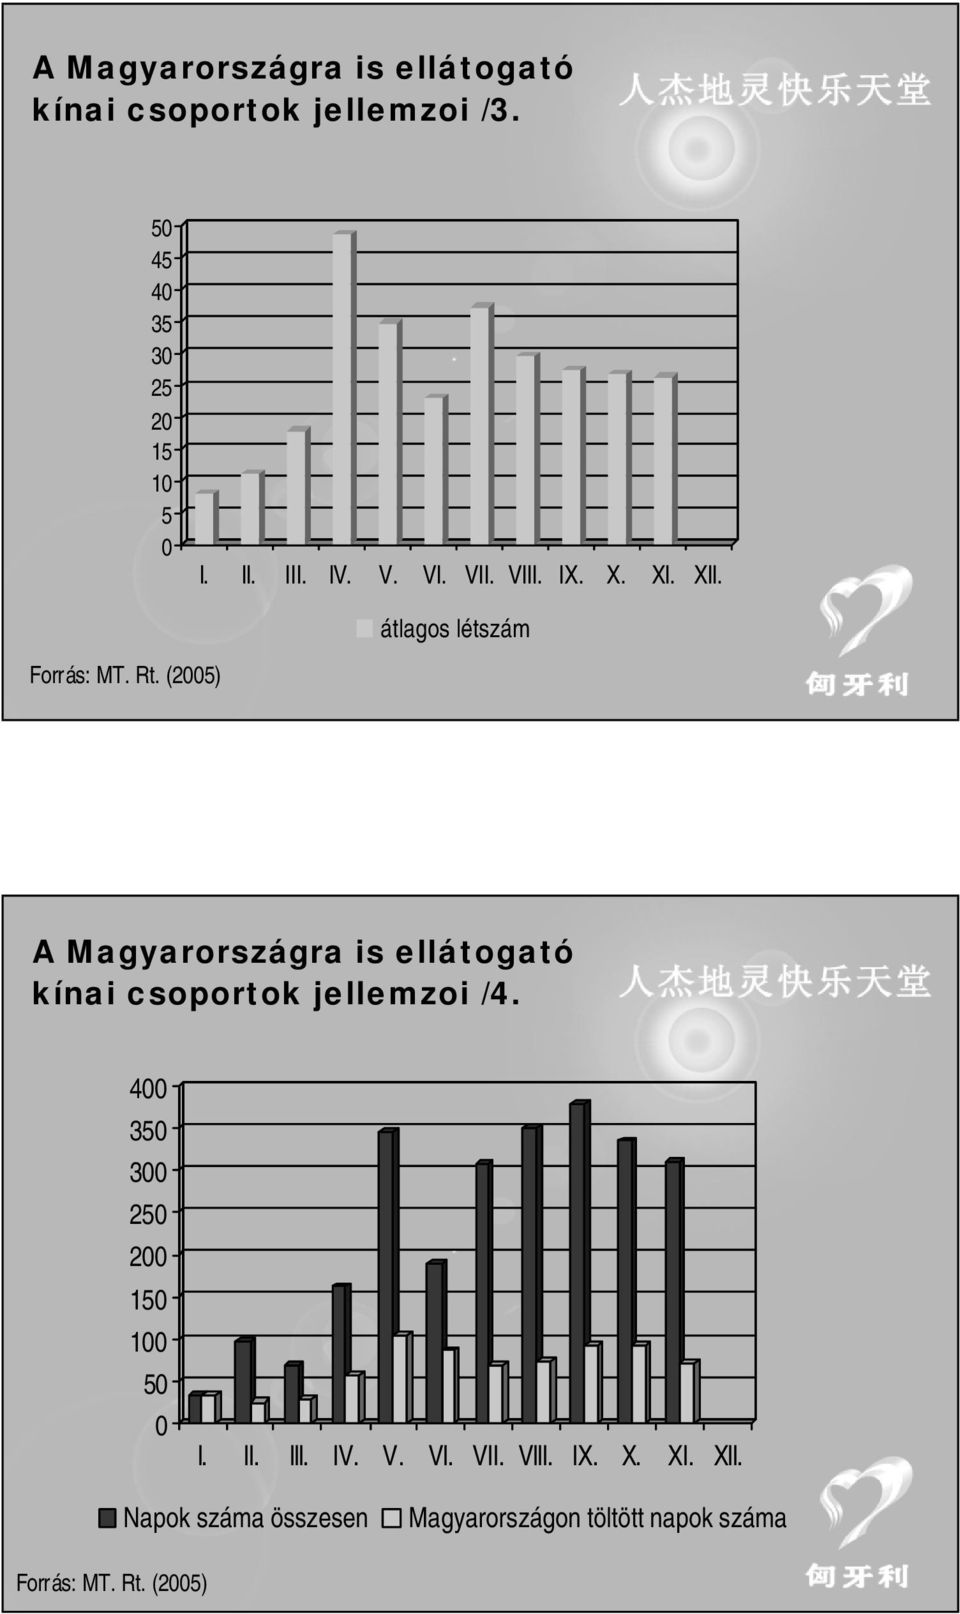 (25) A Magyarországra is ellátogató kínai csoportok jellemzoi /4. 4 35 3 25 2 15 1 5 I. II.